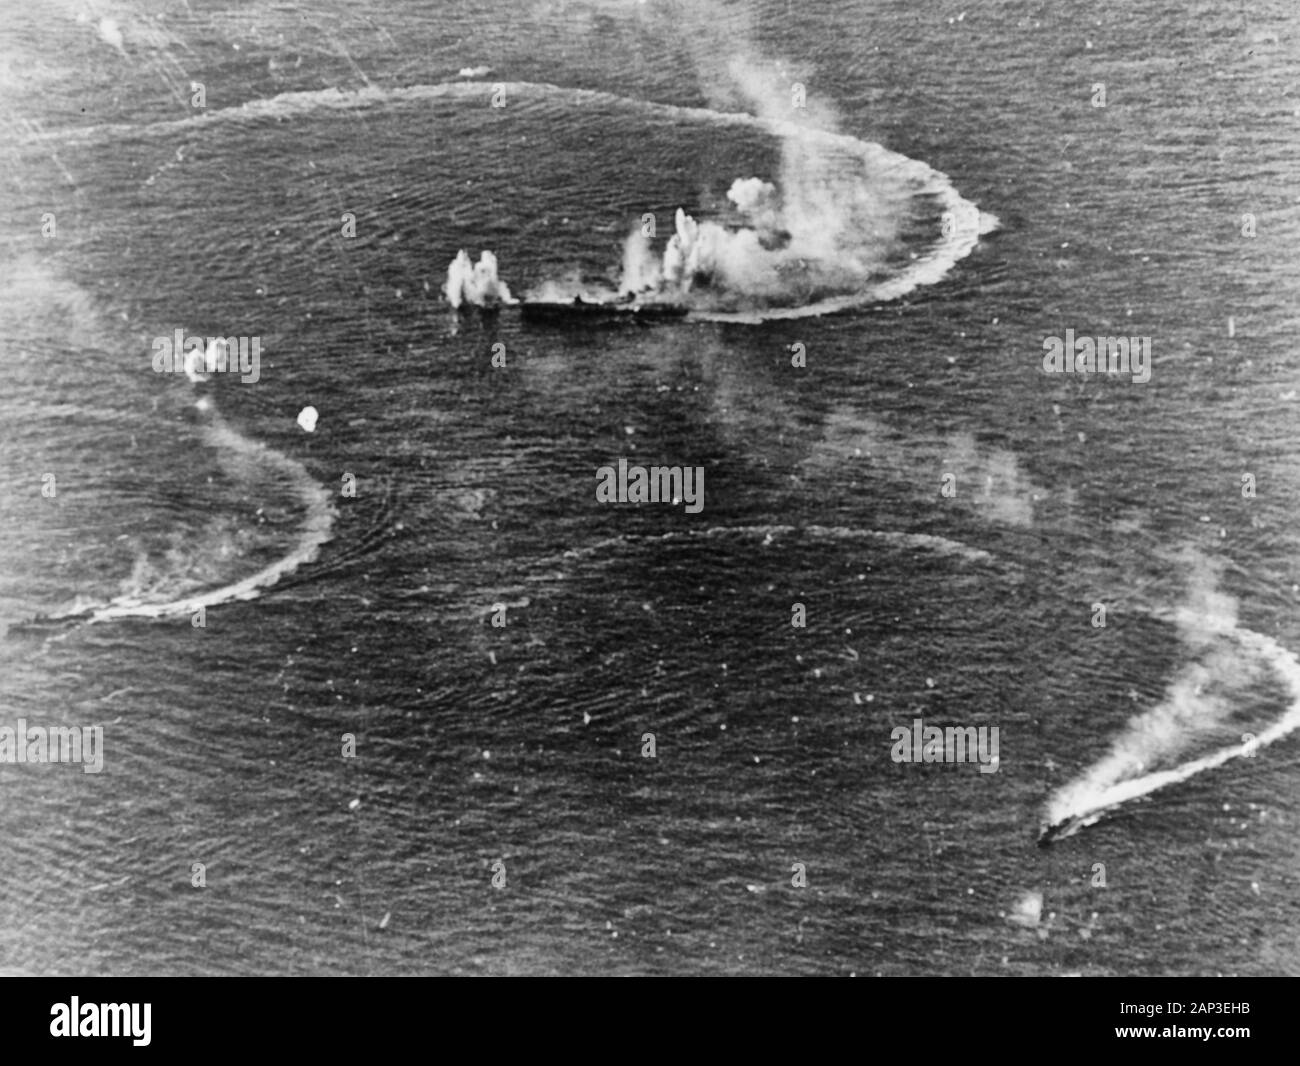 Kampf der philippinischen Meer: Der japanische Flugzeugträger Zuikaku (Mitte) und die Zerstörer Akizuki und Wakatsuki manövrieren, während unter Angriff durch US Navy carrier Aircraft, am späten Nachmittag des 20. Juni 1944. Zuikaku wurde durch mehrere Bomben während dieser Angriffe schlagen, aber überlebt. Stockfoto